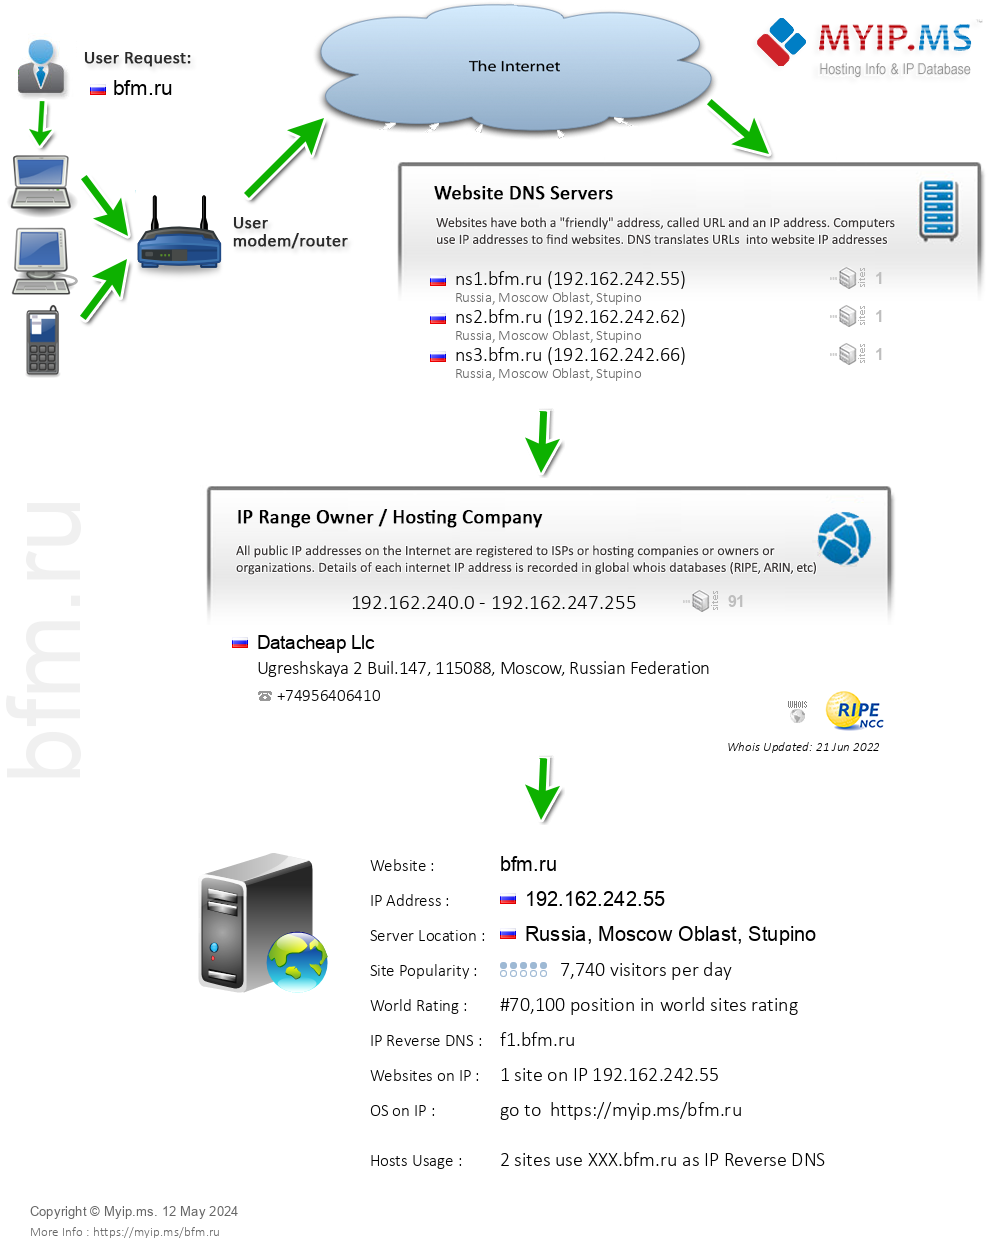 Bfm.ru - Website Hosting Visual IP Diagram